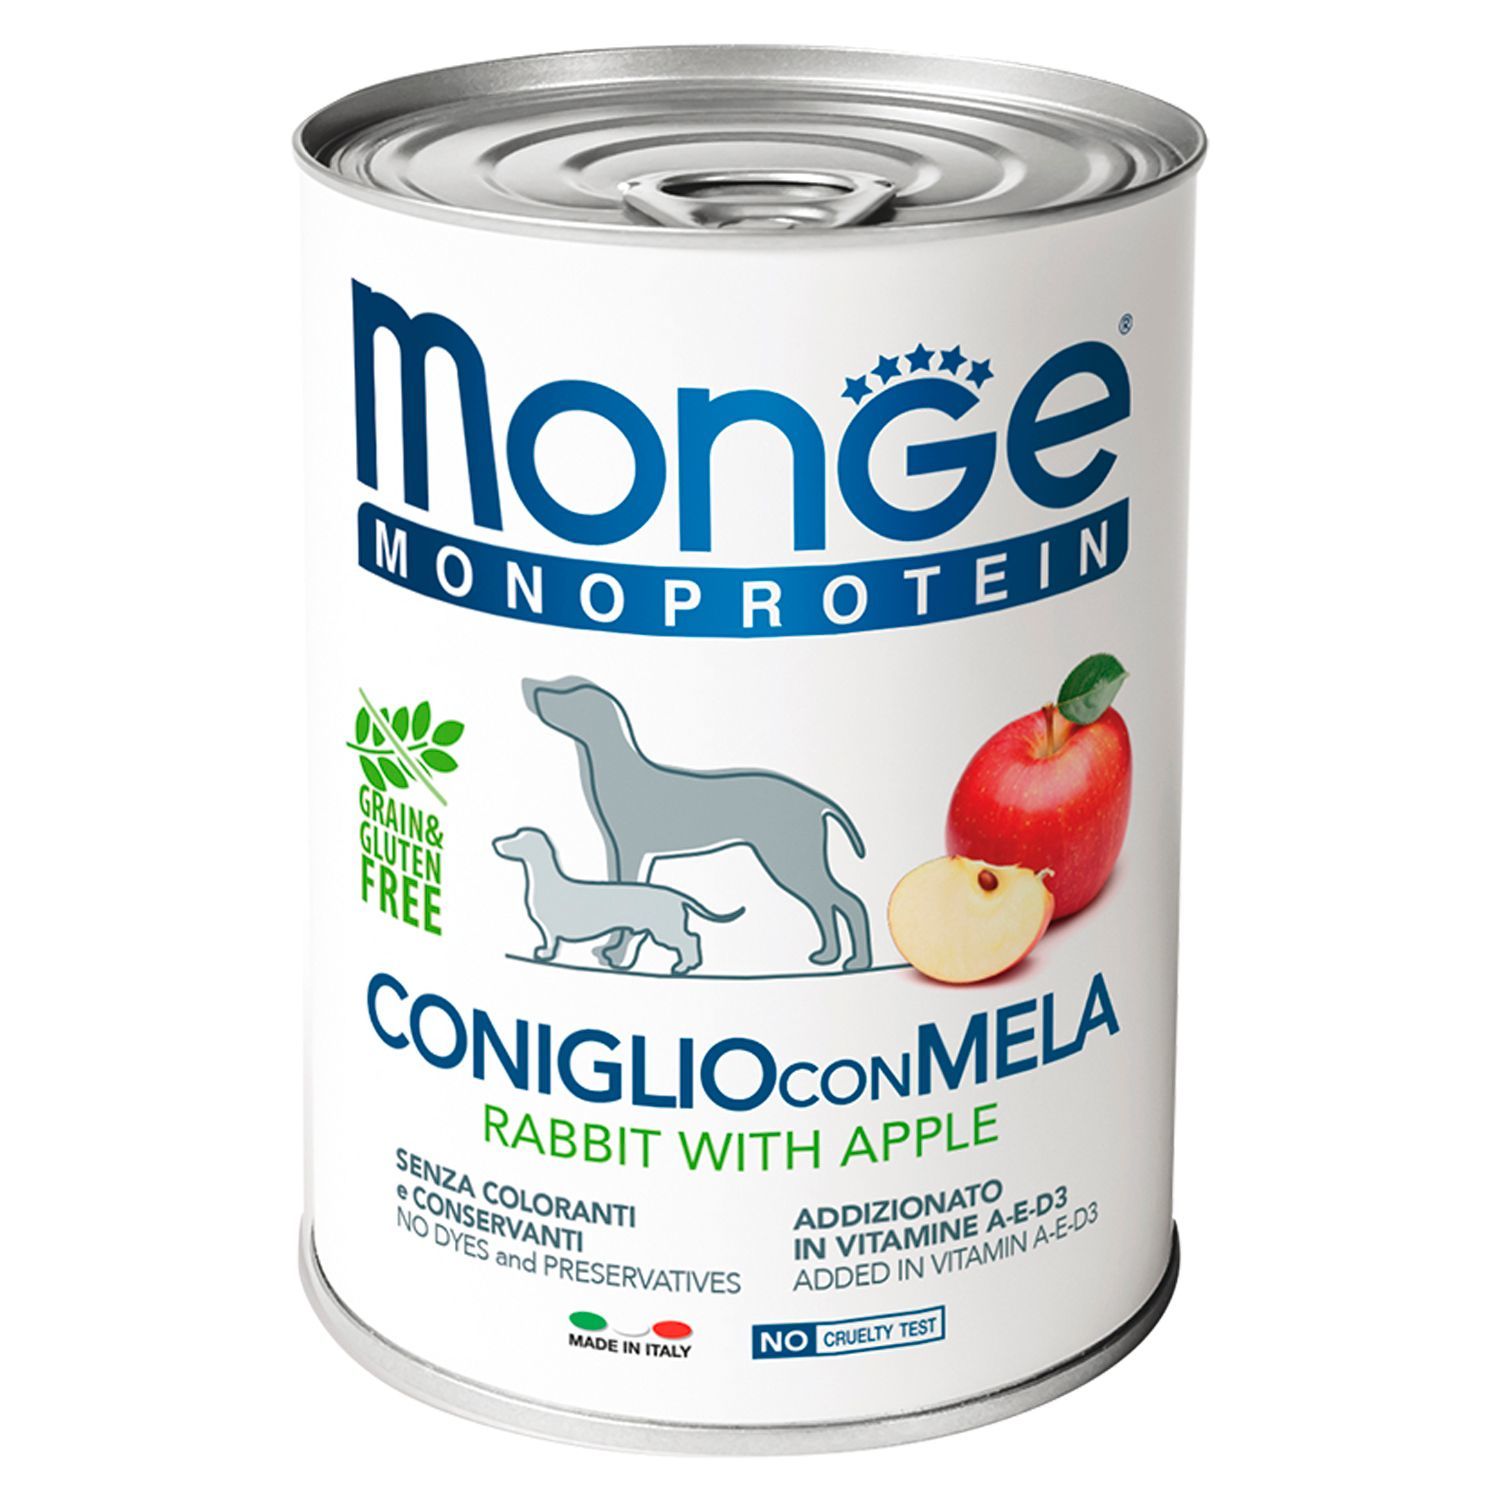 Monge Паштет для собак Monge Dog Monoproteico Fruits монопротеиновый, из кролика с рисом и яблоками 70014328_1.jpeg